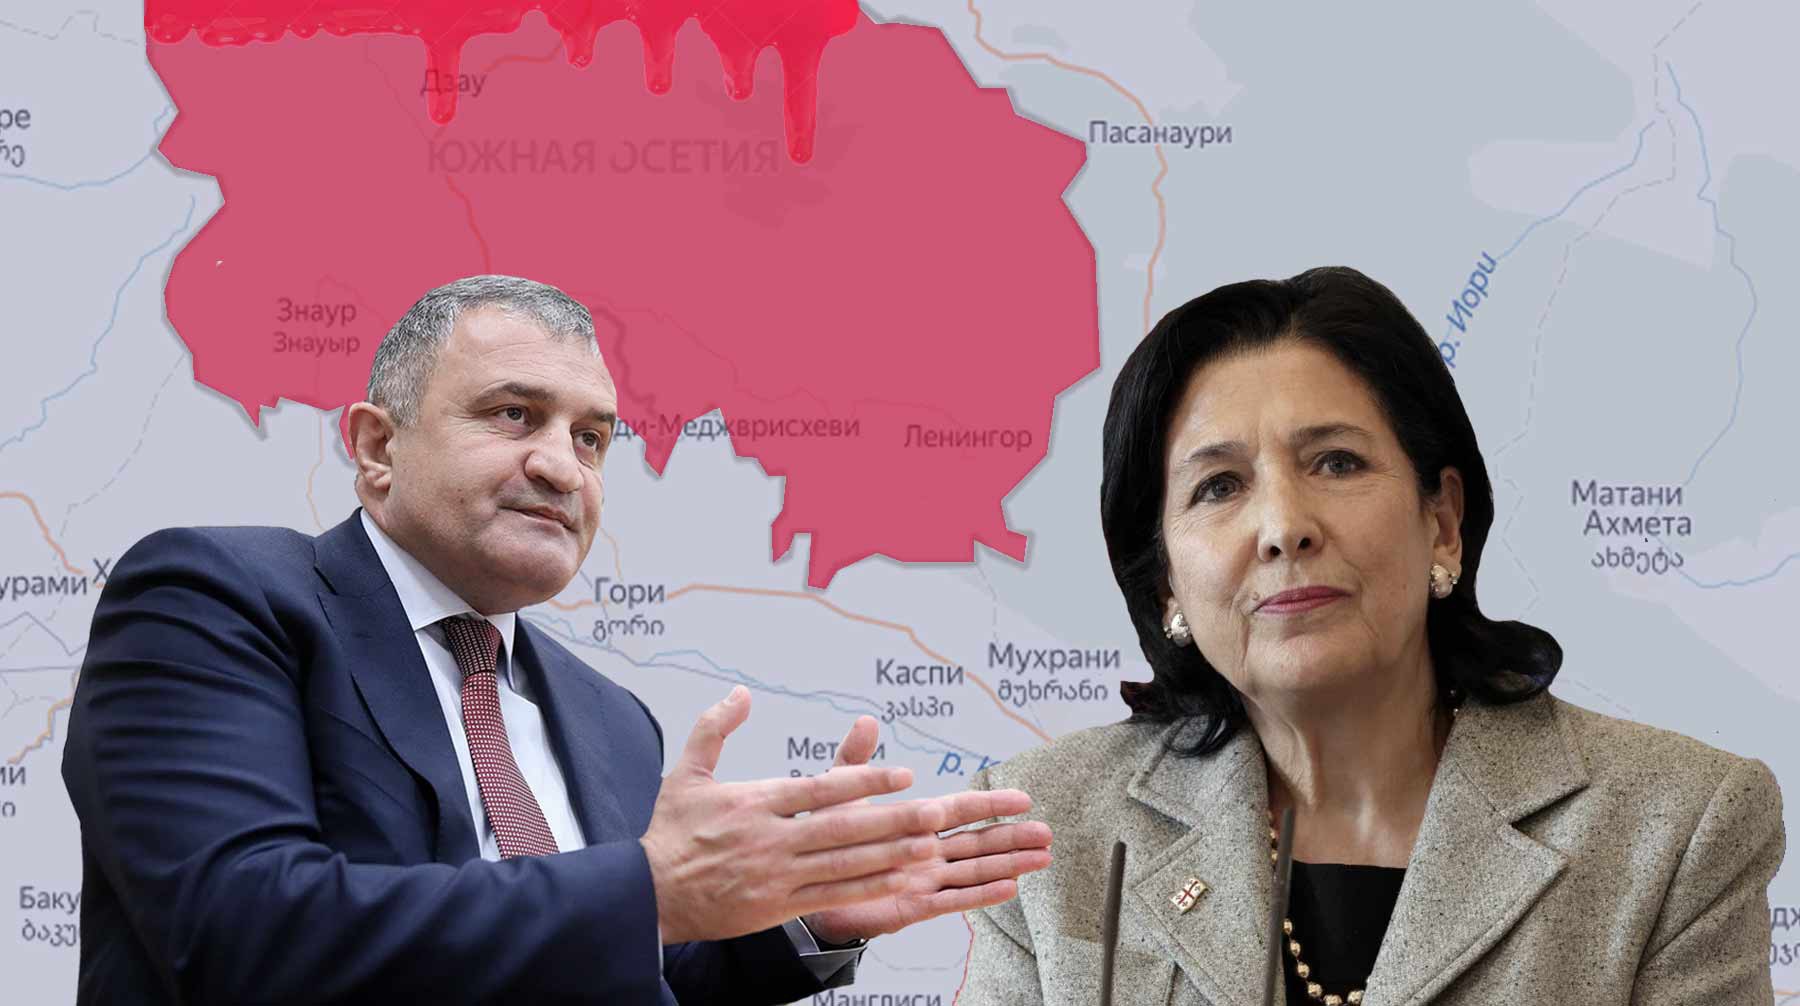 Dailystorm - «Сами виноваты». Россия может признать геноцид в Южной Осетии со стороны Грузии